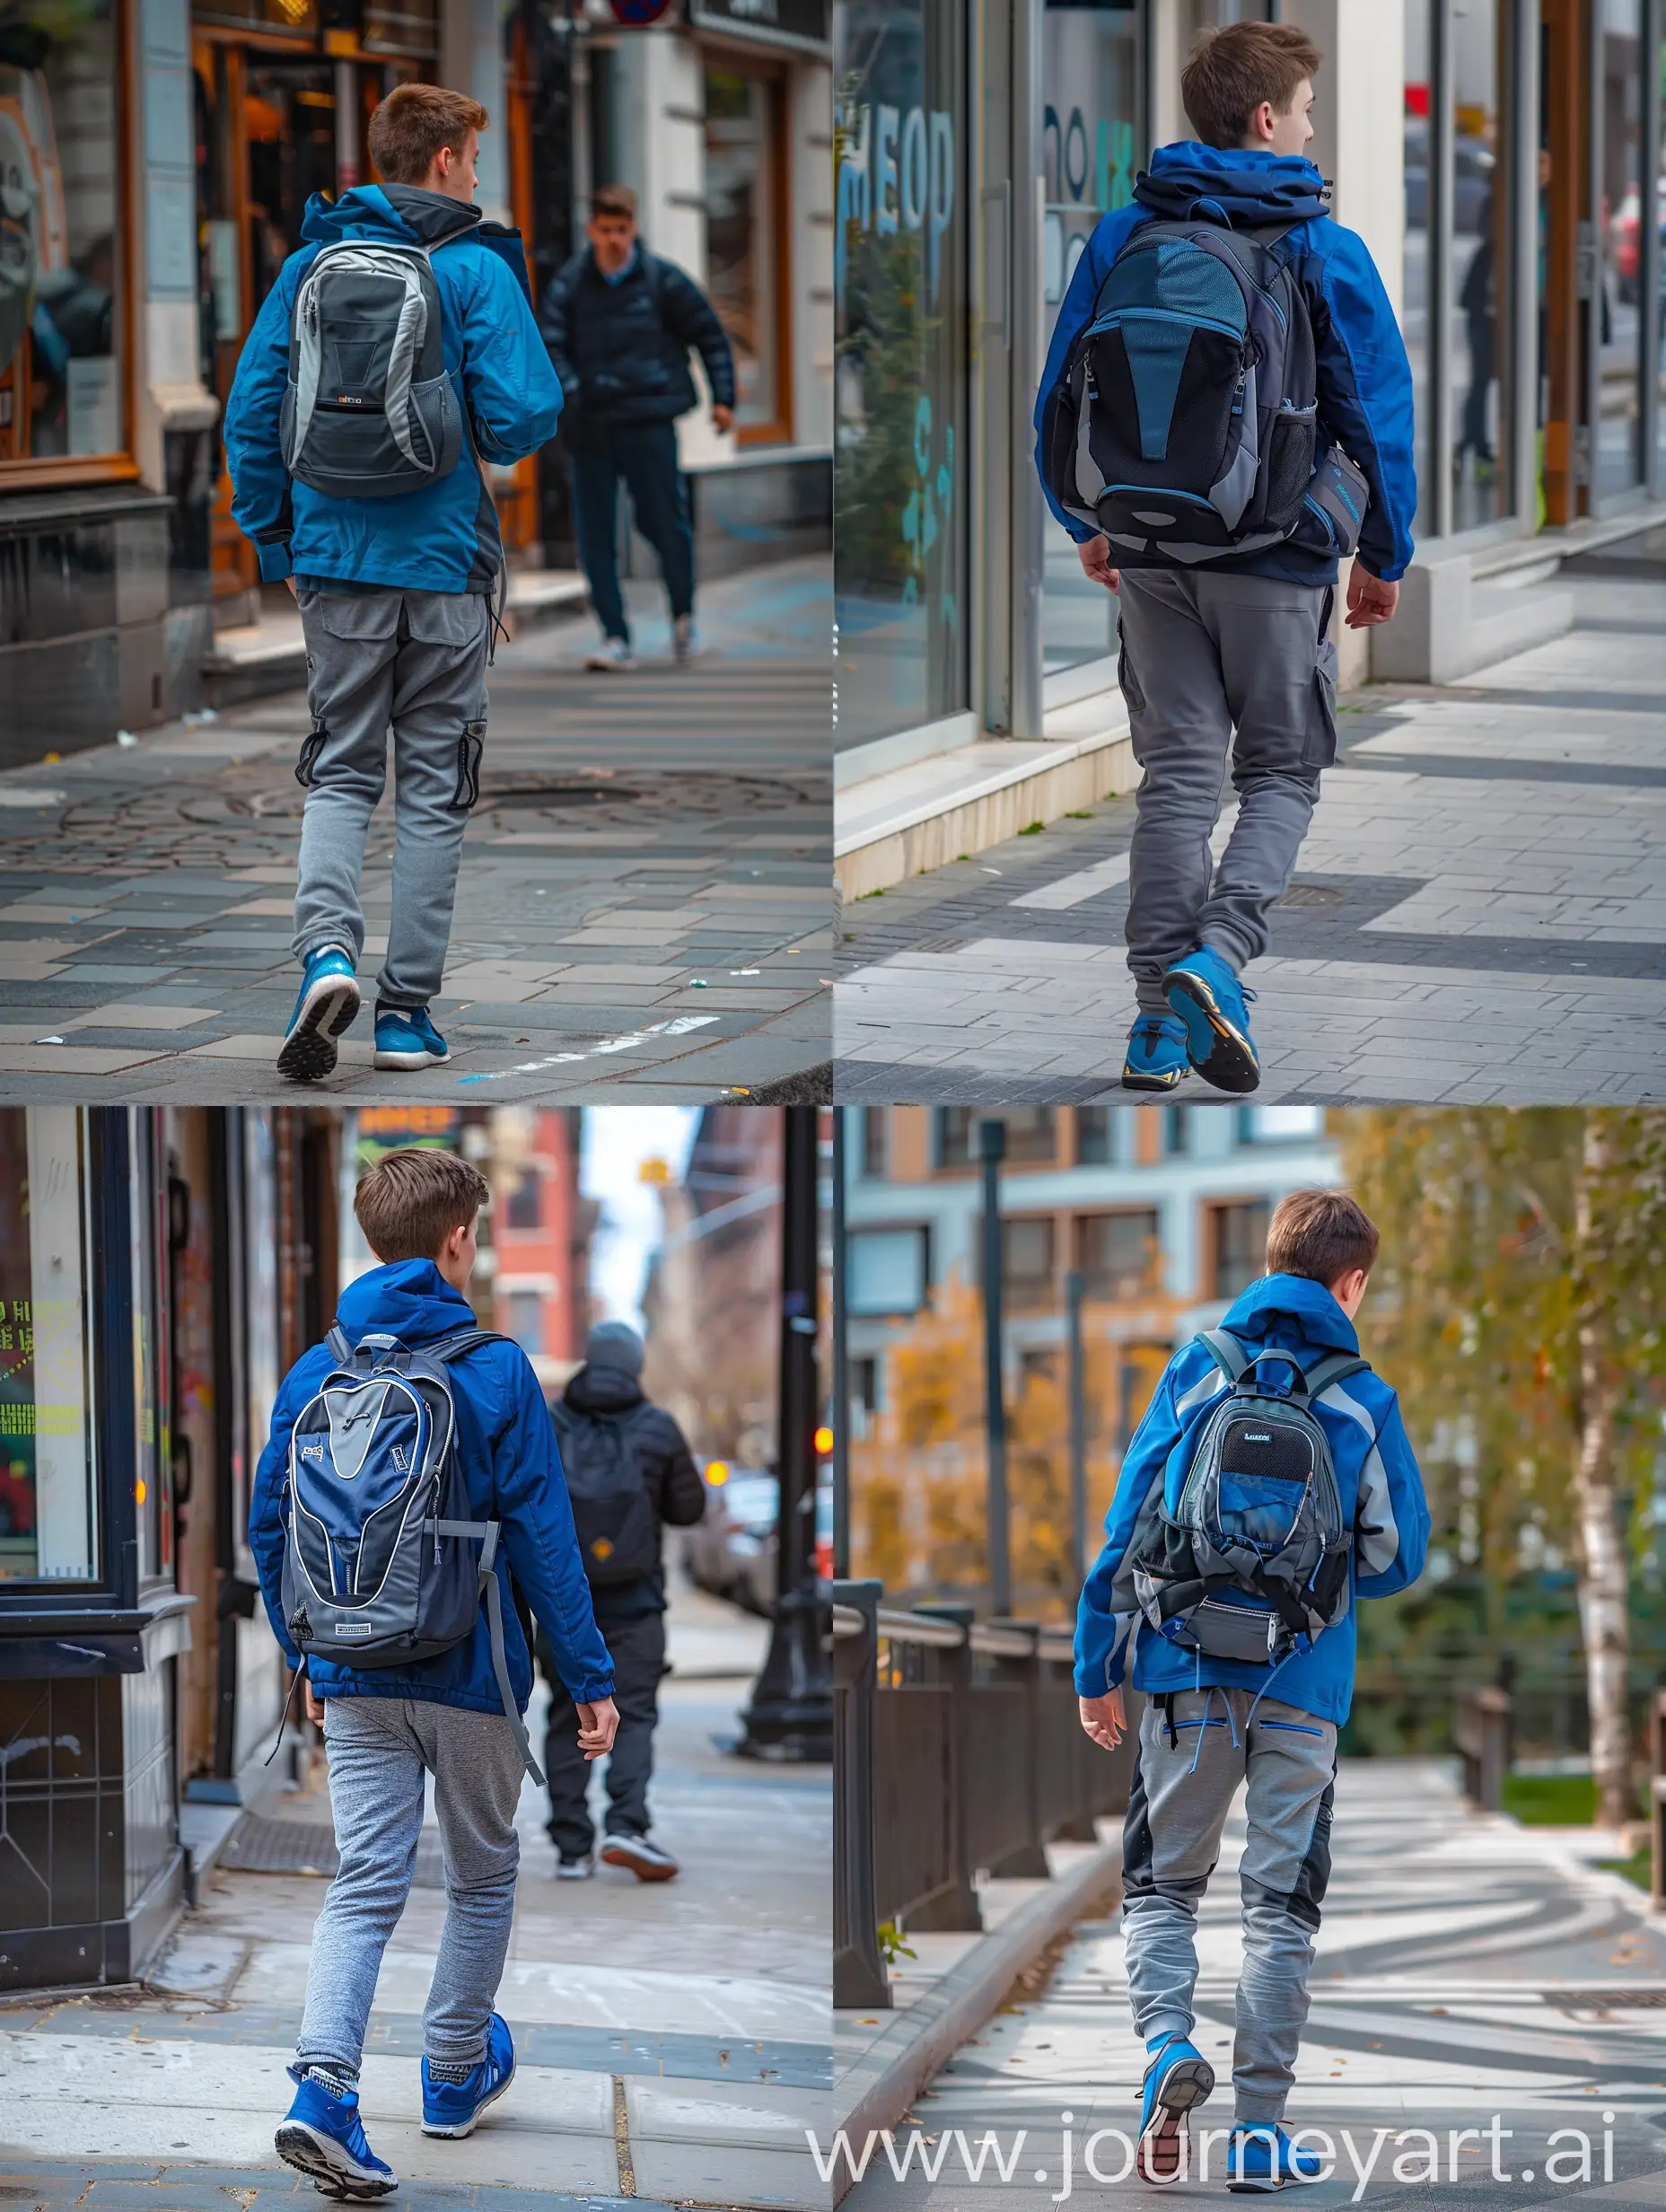 Young-Man-in-Blue-Jacket-Walking-on-Sidewalk